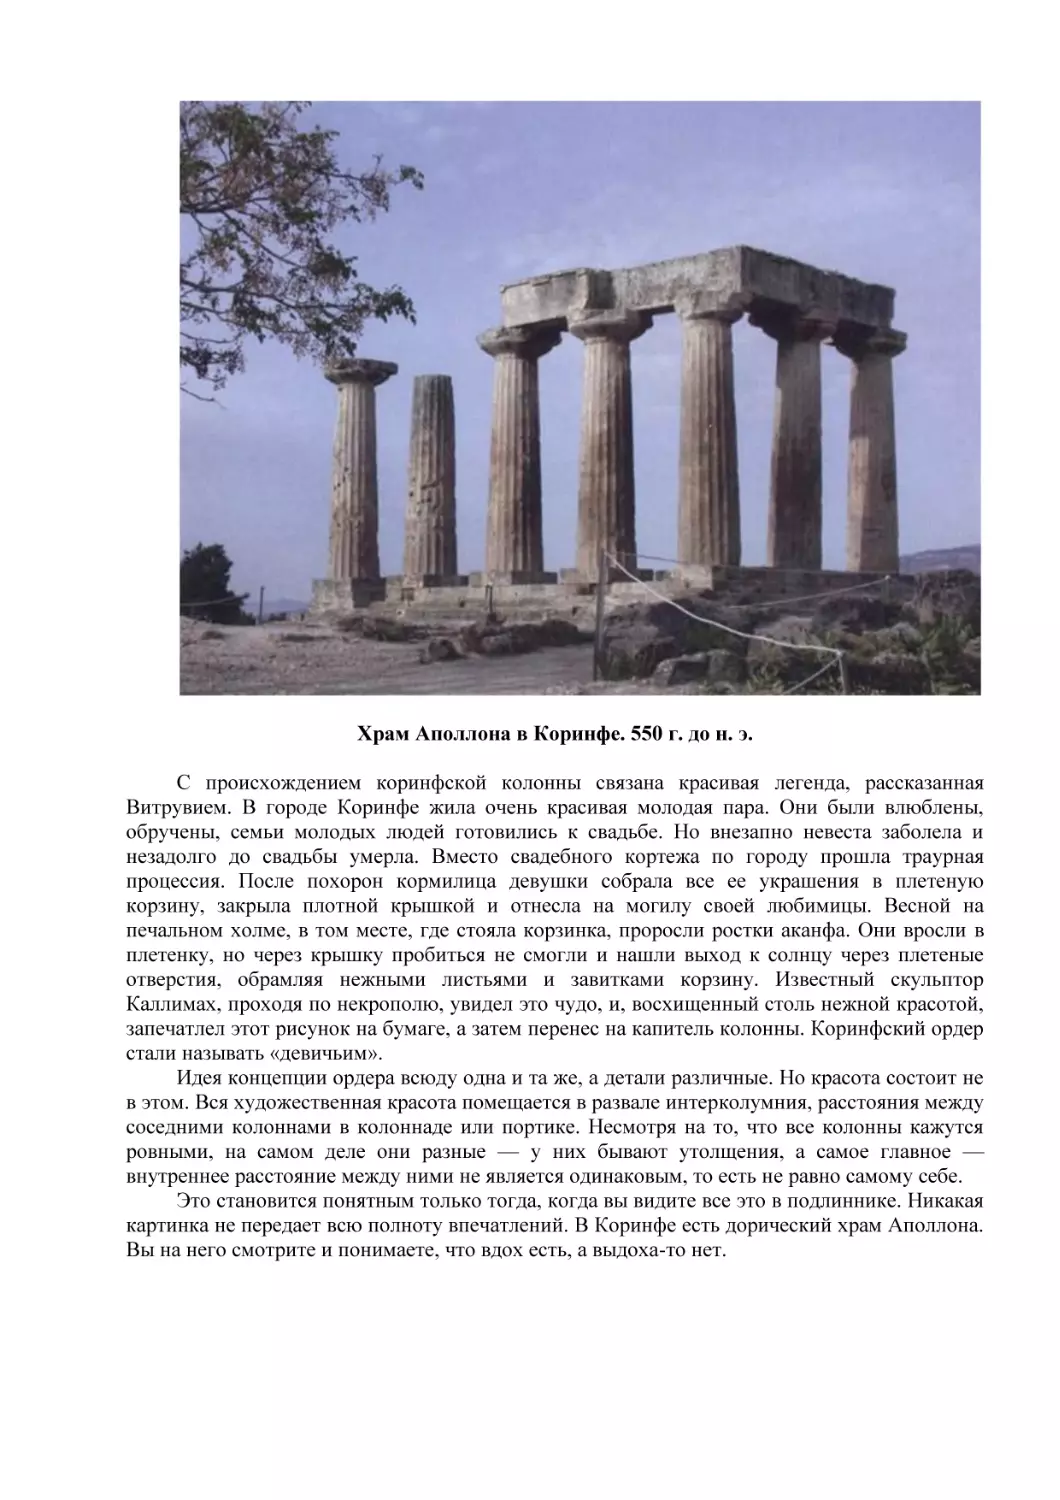 Храм Аполлона в Коринфе. 550 г. до н. э.